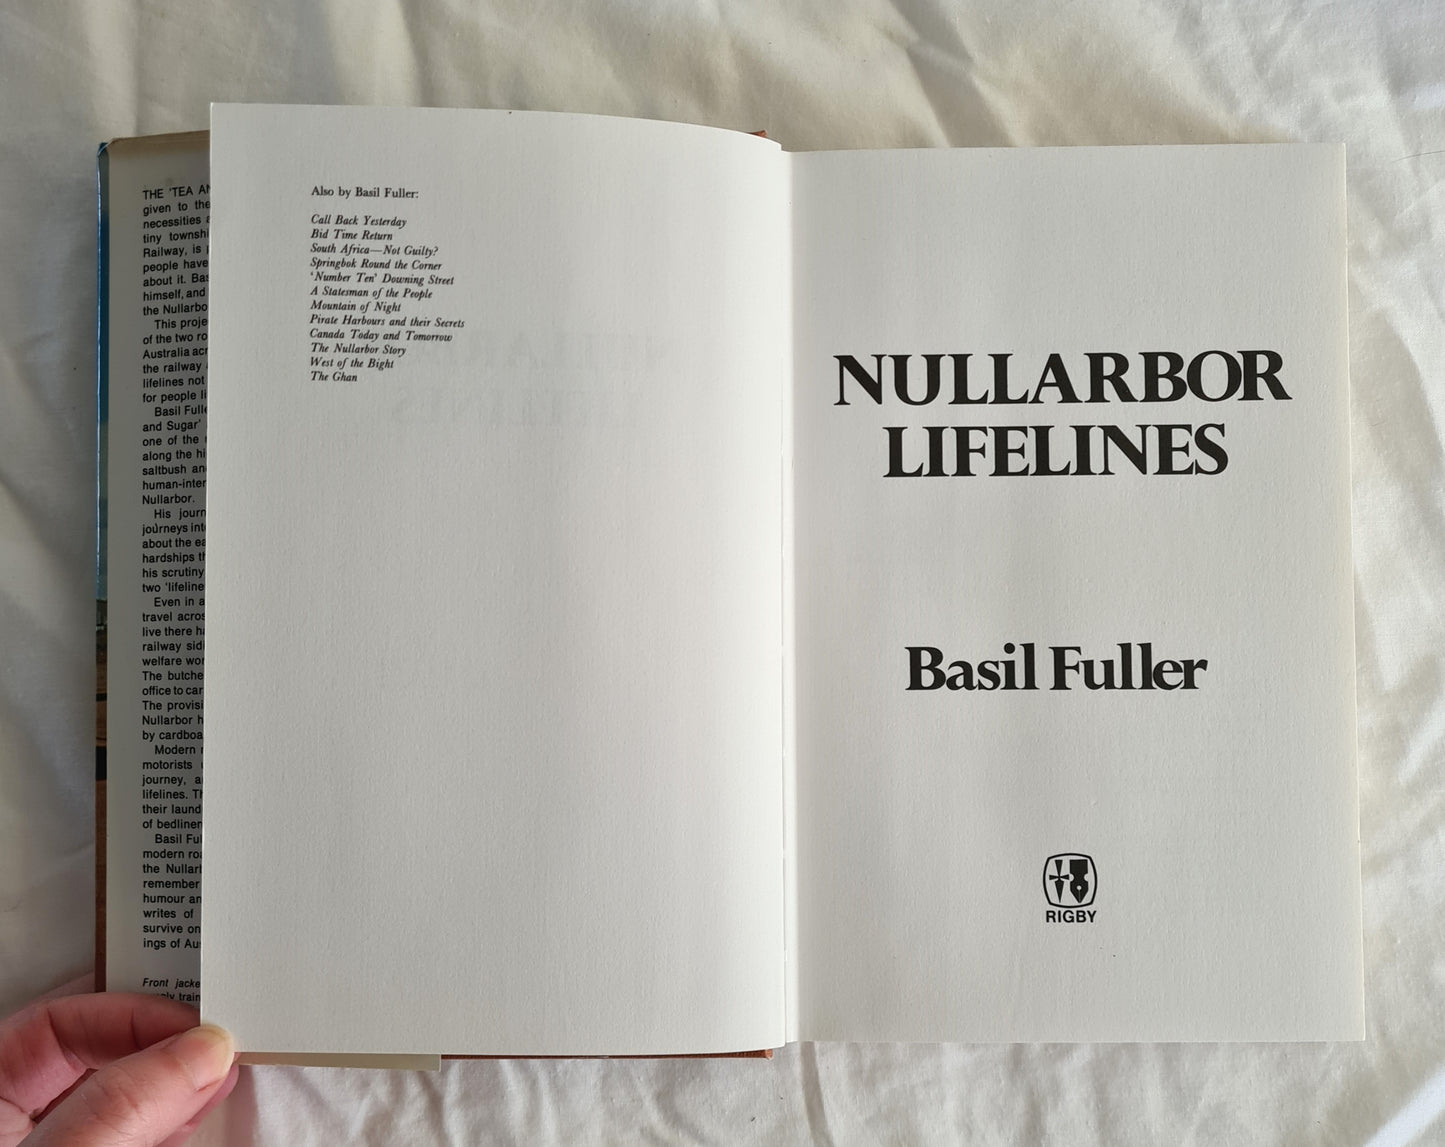 Nullarbor Lifelines by Basil Fuller